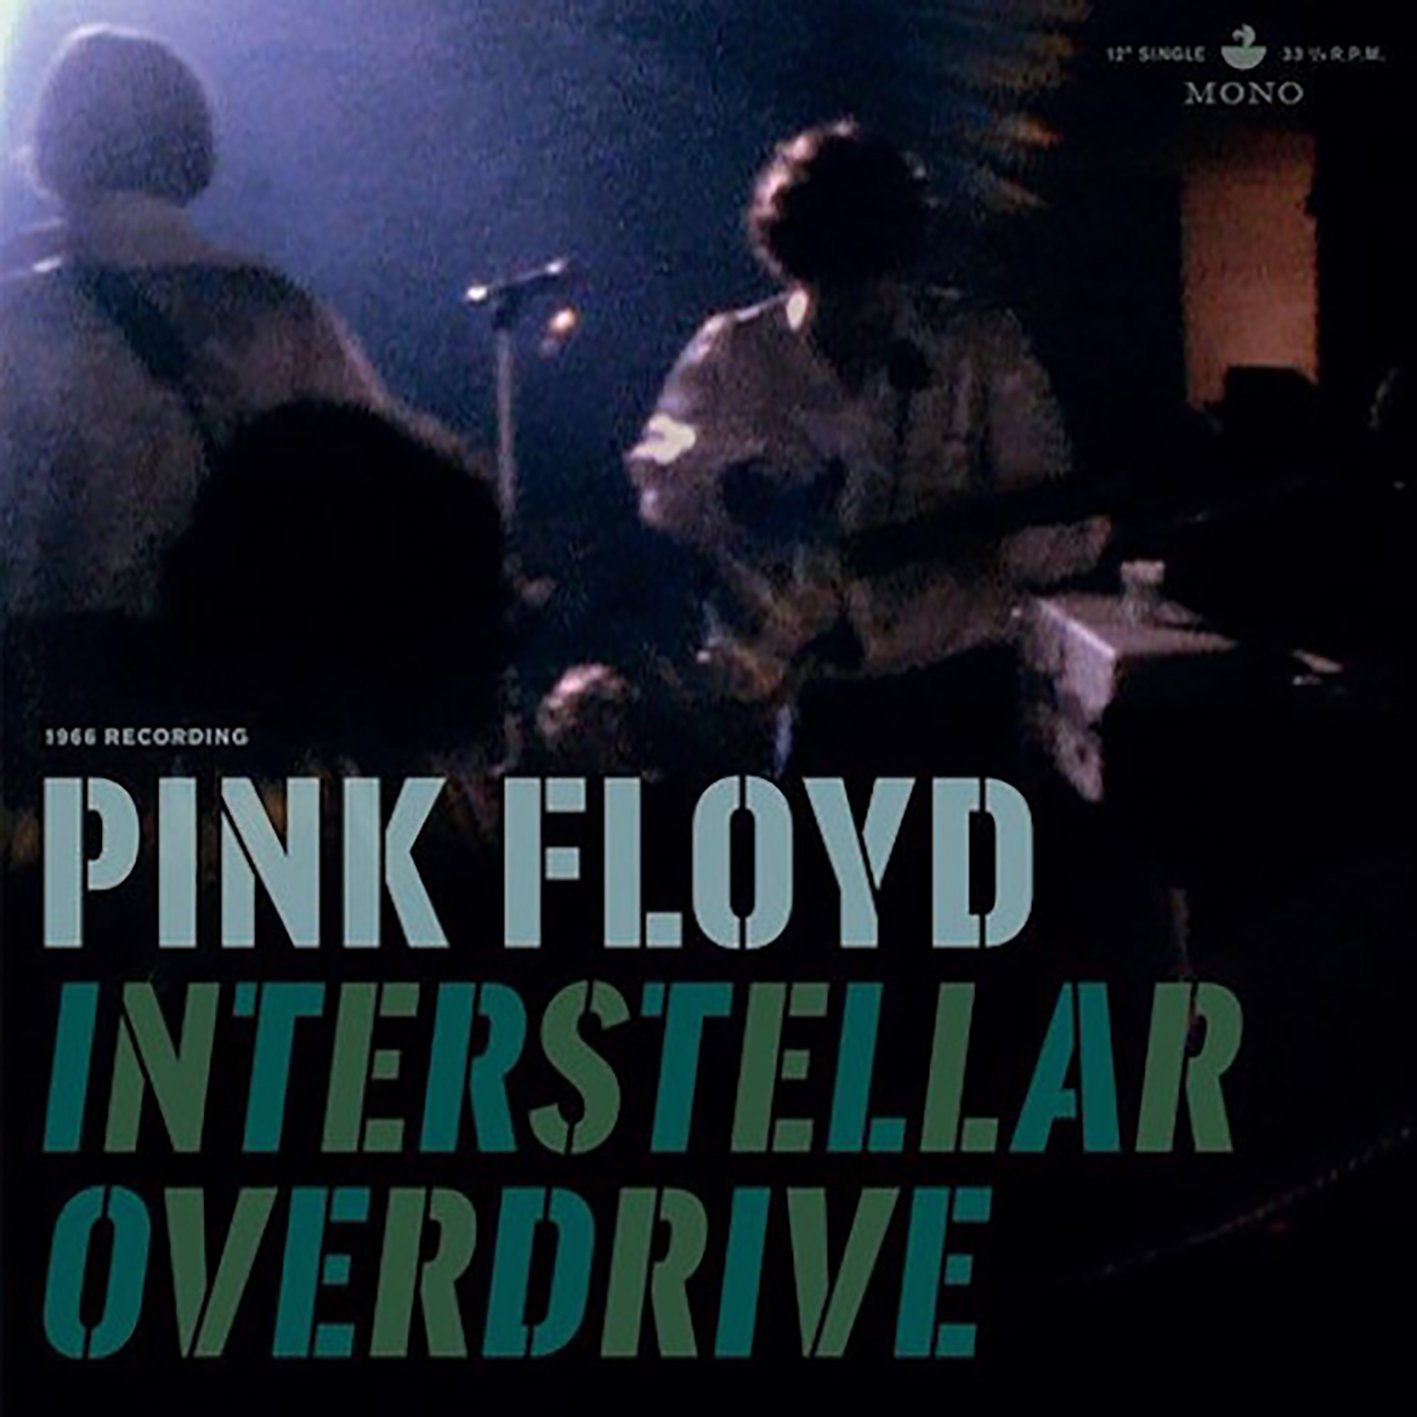 Vinile Pink Floyd - Interstellar Overdrive (180Gr) NUOVO SIGILLATO, EDIZIONE DEL 22/04/2017 SUBITO DISPONIBILE